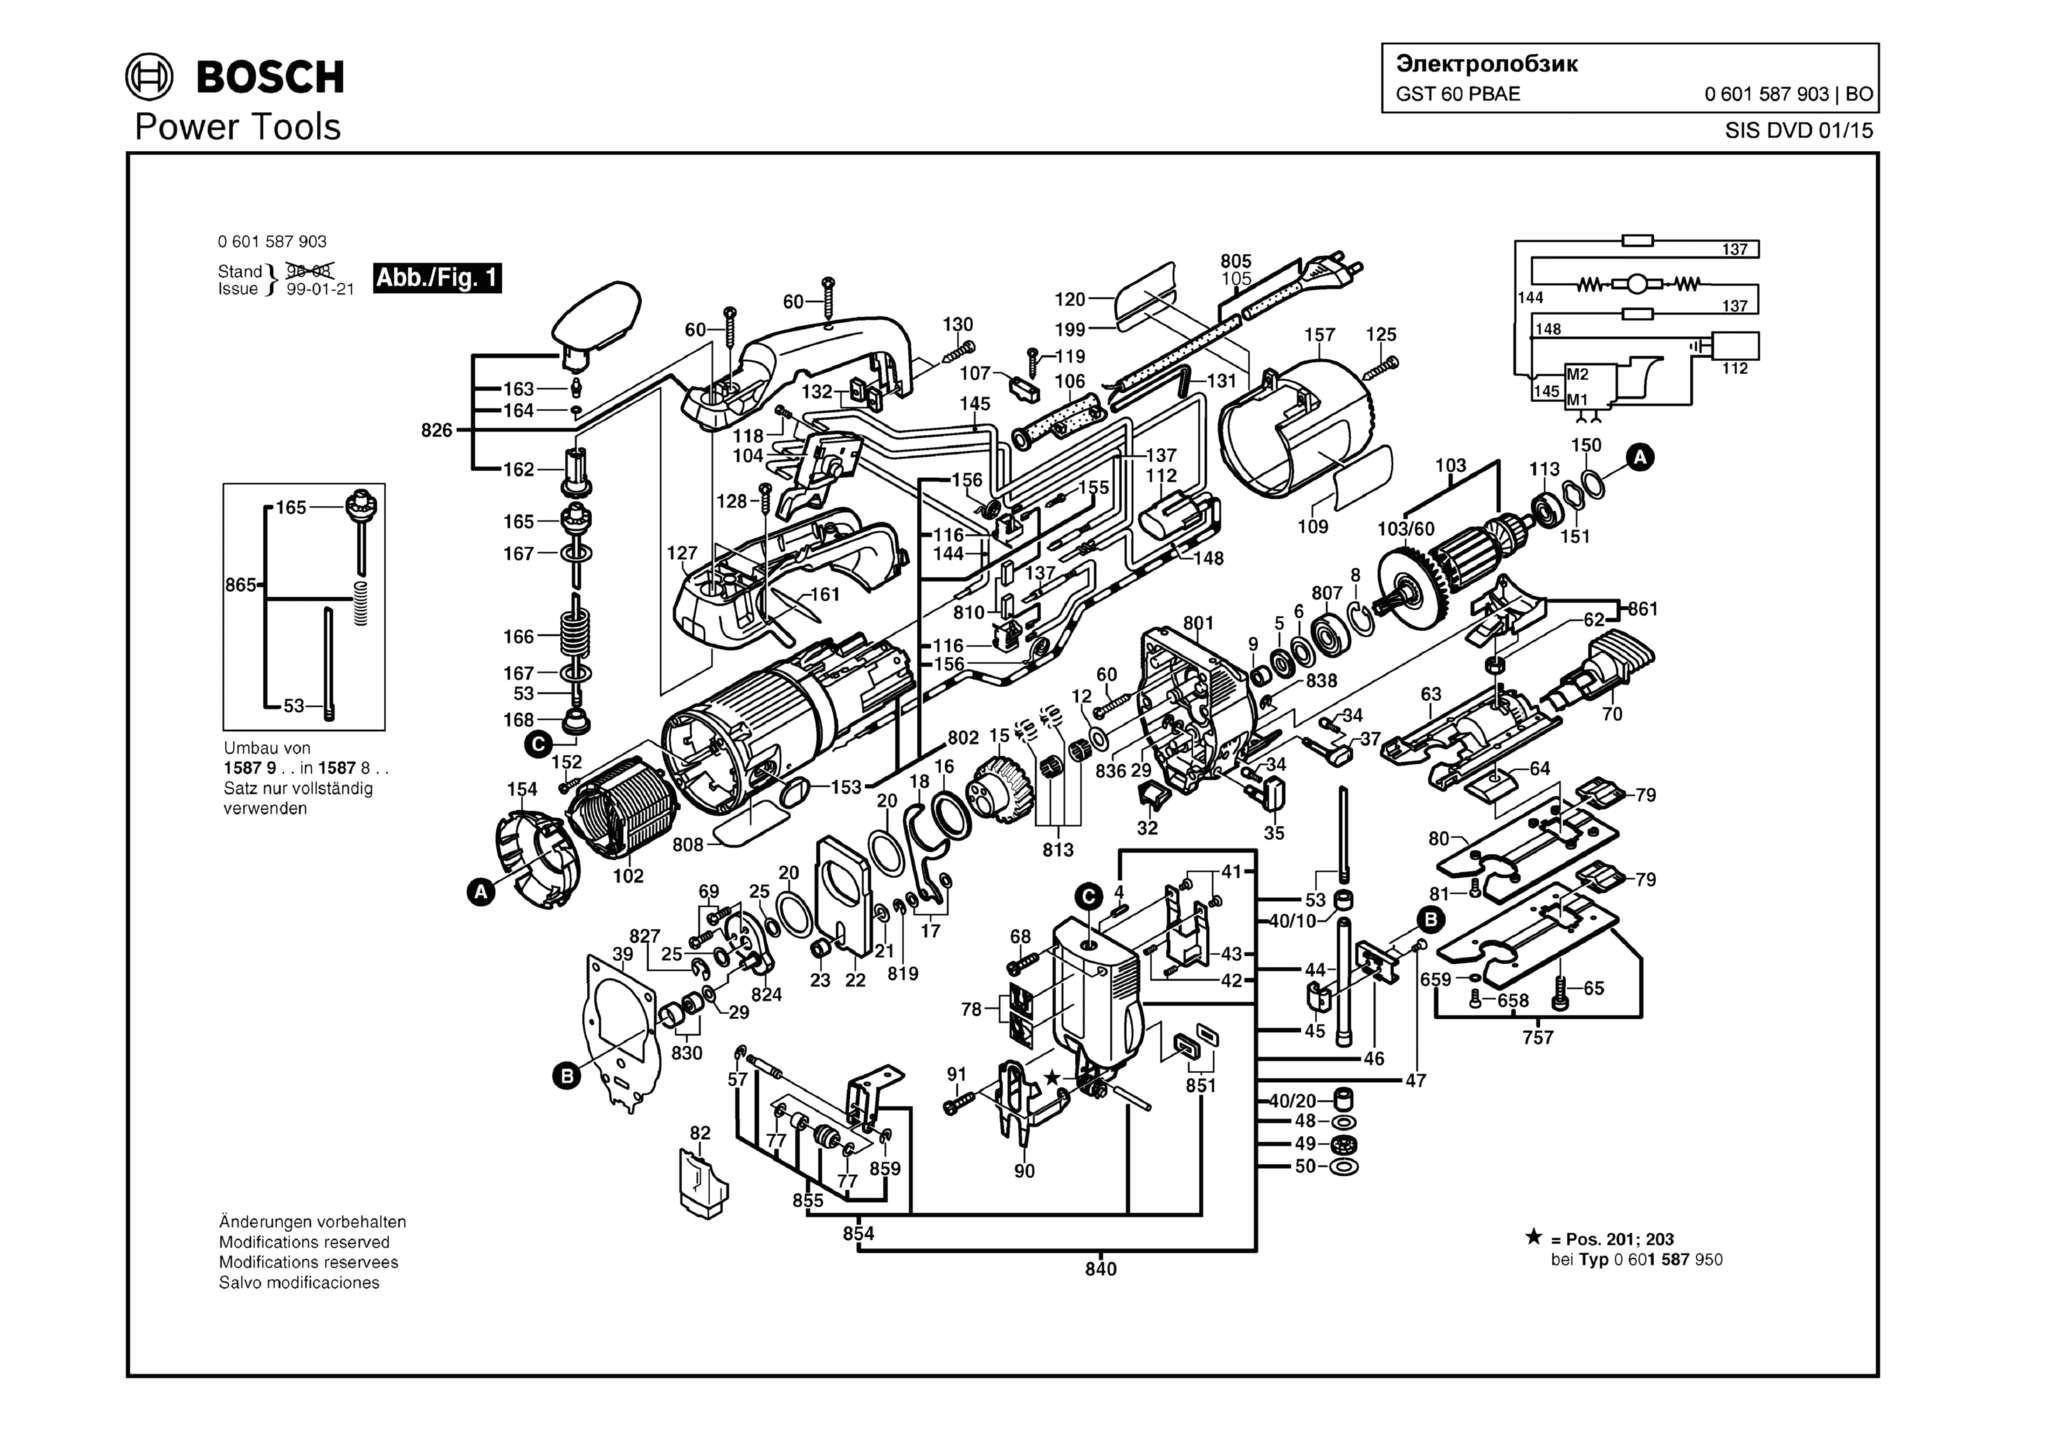 Запчасти, схема и деталировка Bosch GST 60 PBAE (ТИП 0601587903)